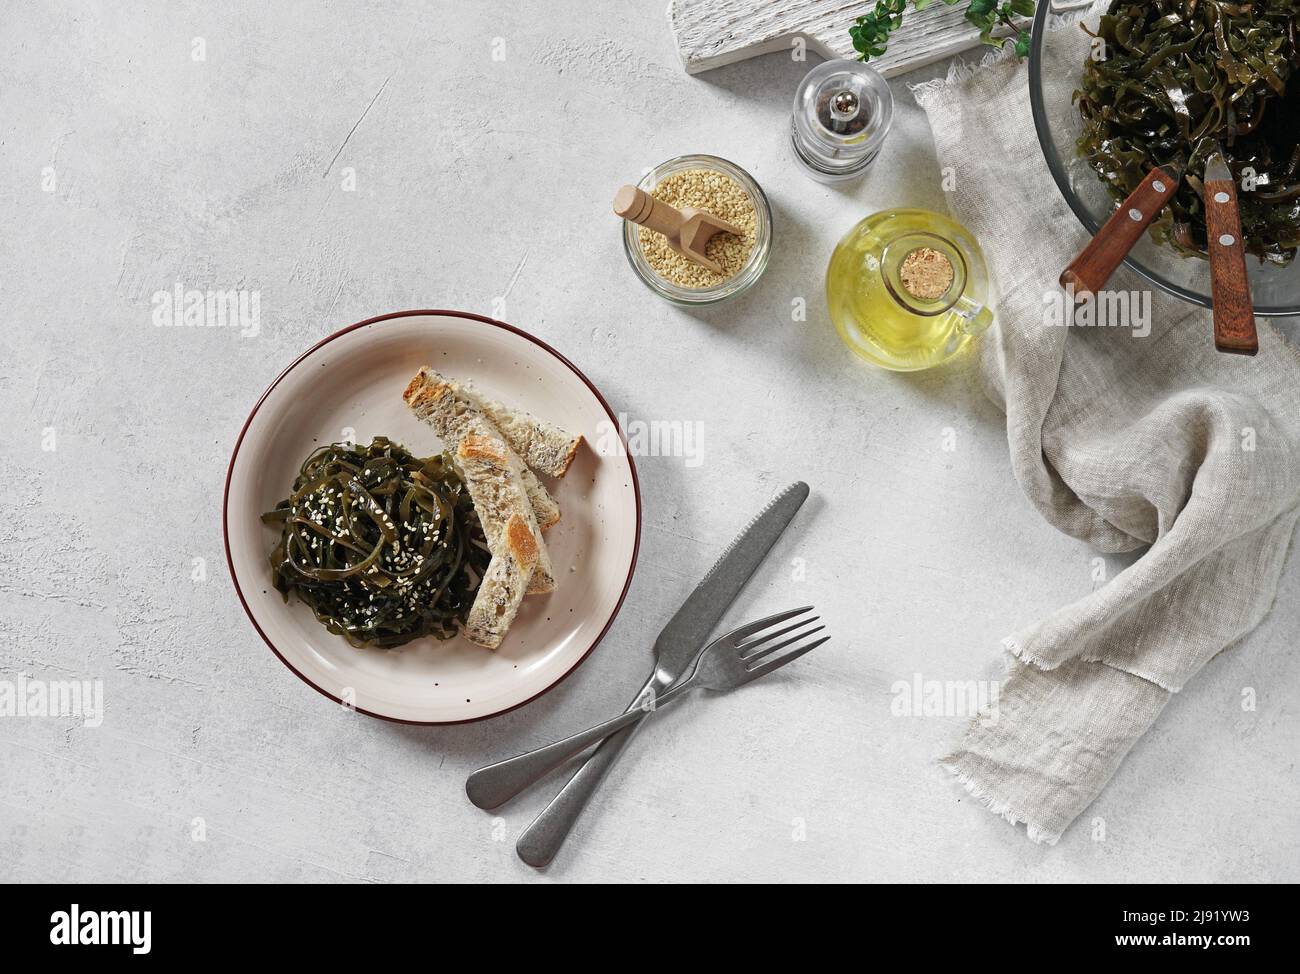 insalata di alga laminaria con semi di sesamo e olio. Pranzo o cena tradizionale. Usato per mangiare con i bastoni del pane. Crudo, vegano, vegetariano cibo sano Foto Stock